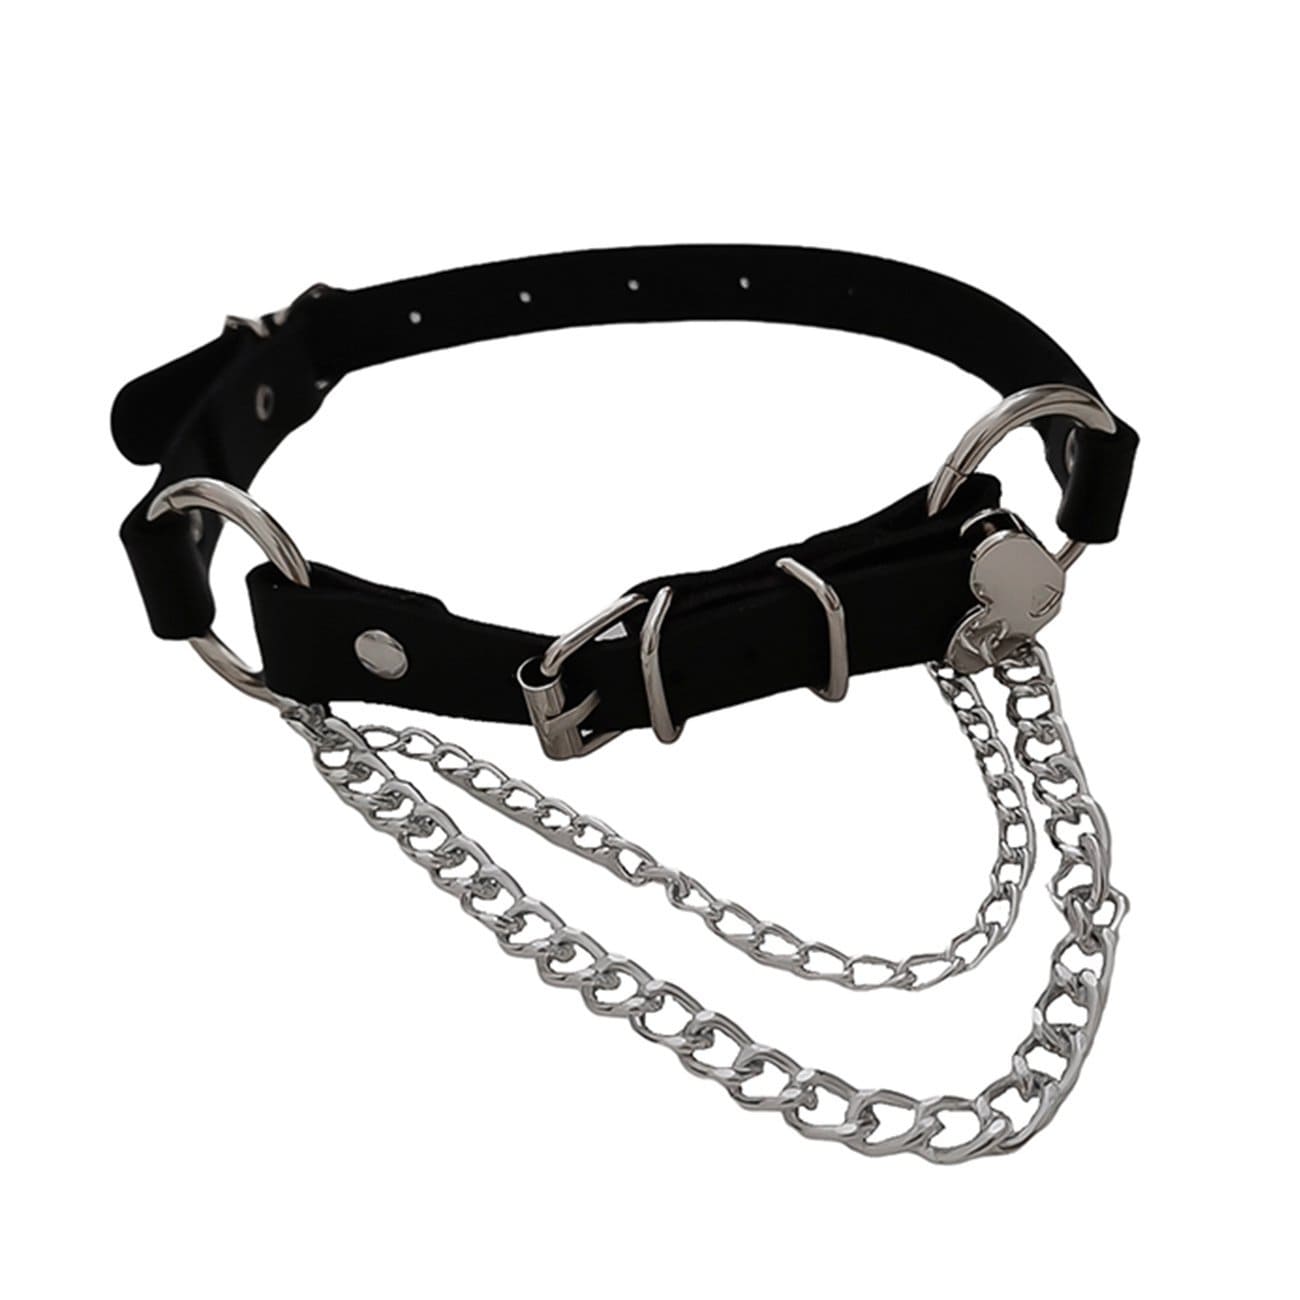 WLS Dark Love Chain PU Clavicle Chain Collars